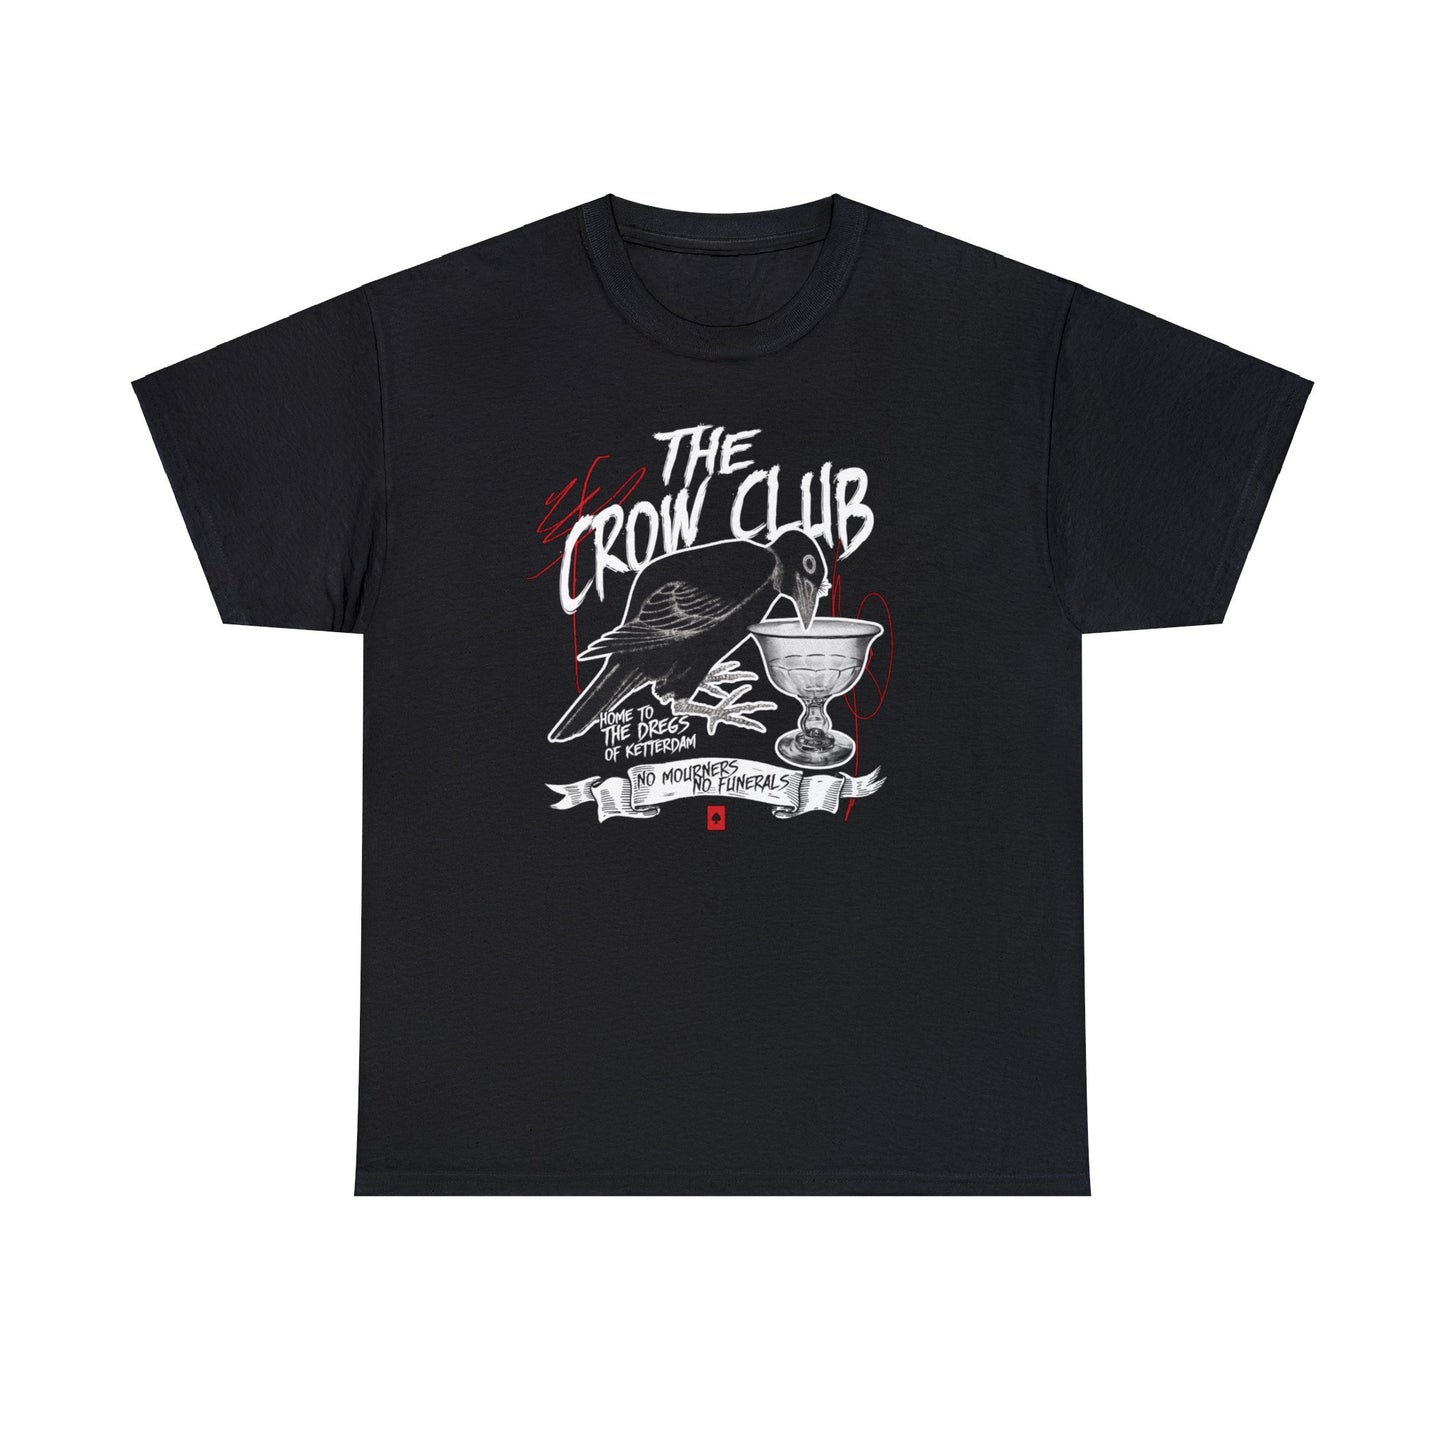 The Crow Club Tee